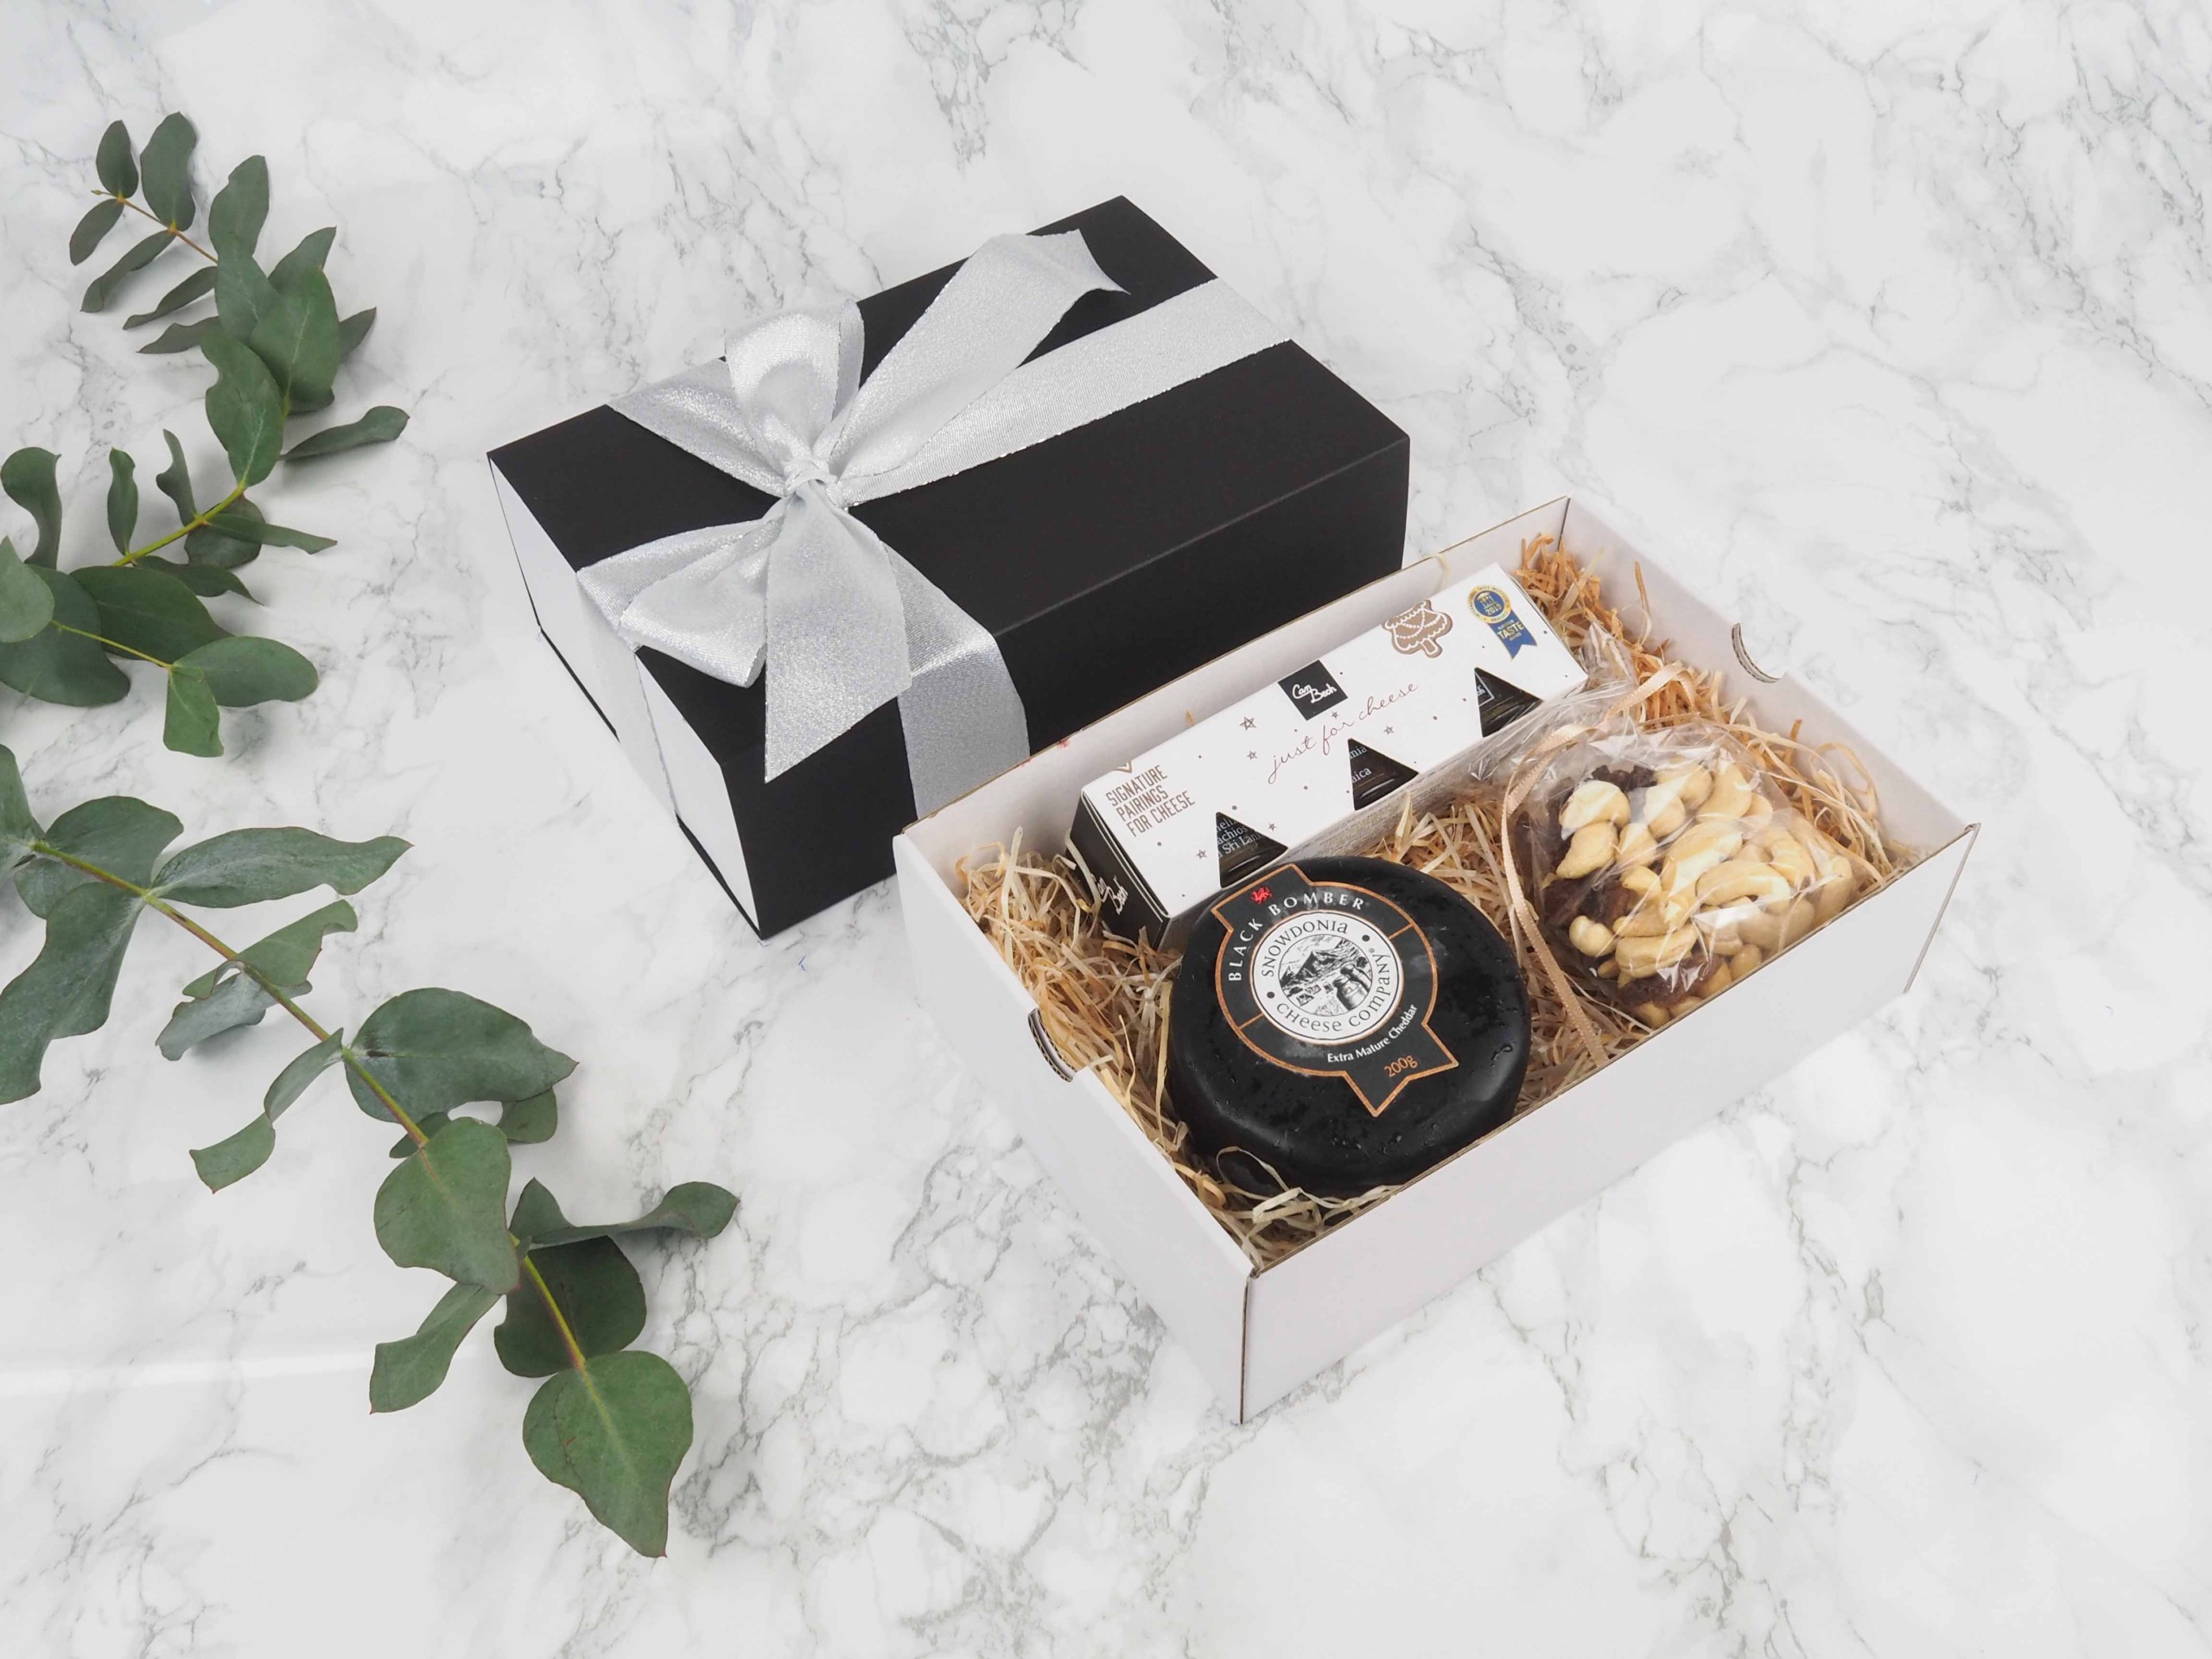 Dárkový balíček Black Exclusive je speciální svou elegantní vysouvací krabičkou, kterou zdobí atlasová stuha. Dárková krabice v sobě obsahuje britský sýr cheddar Black Bomber, mix oříšků a sadu ovocných mini omáček s příchutí perníčku.